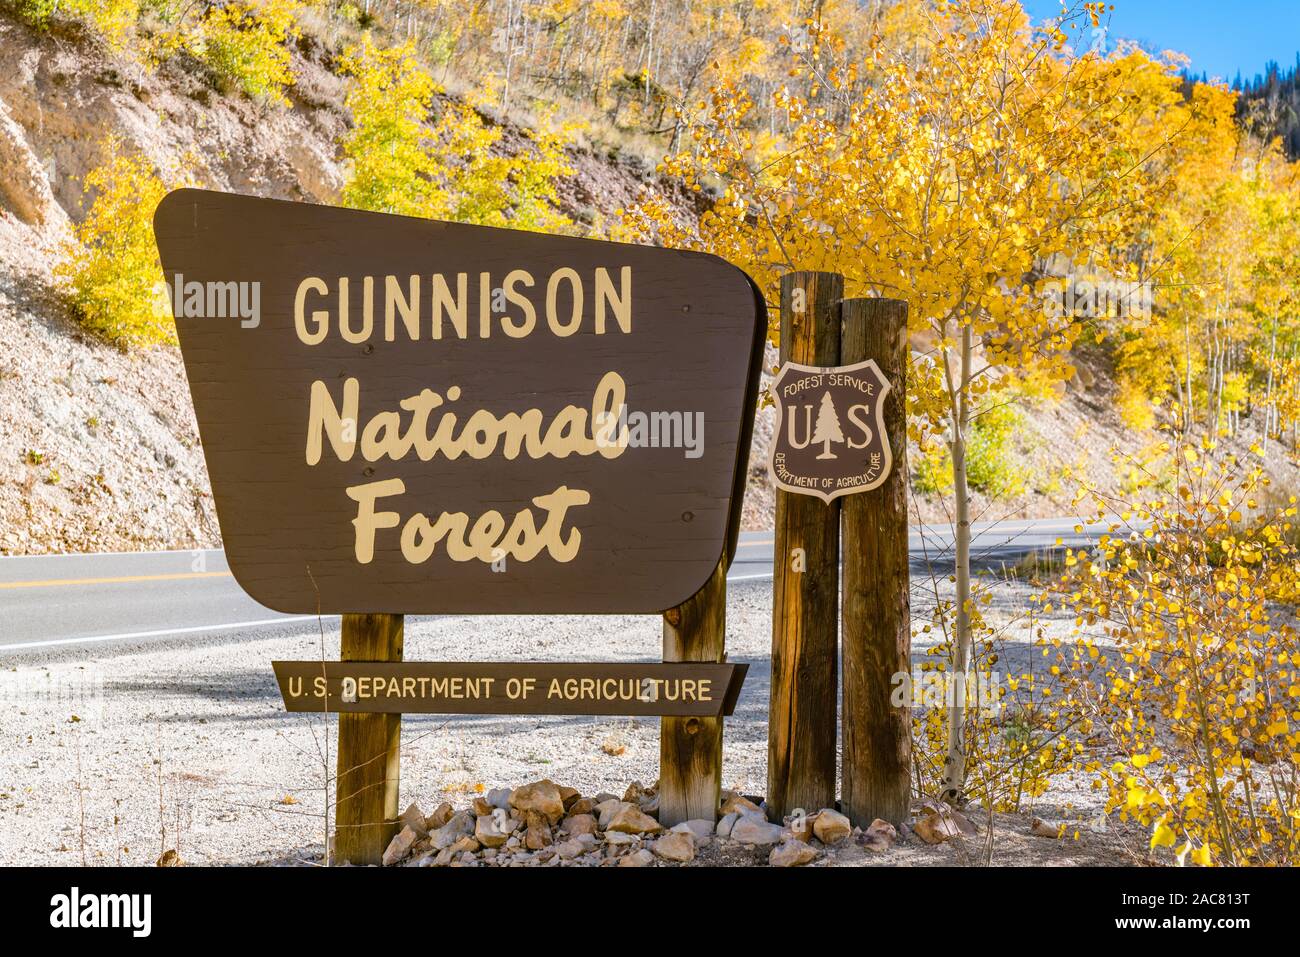 Gunnison, CO - 3 octobre, 2019 : Gunnison National Forest Bienvenue signer le long de la route à l'automne Banque D'Images